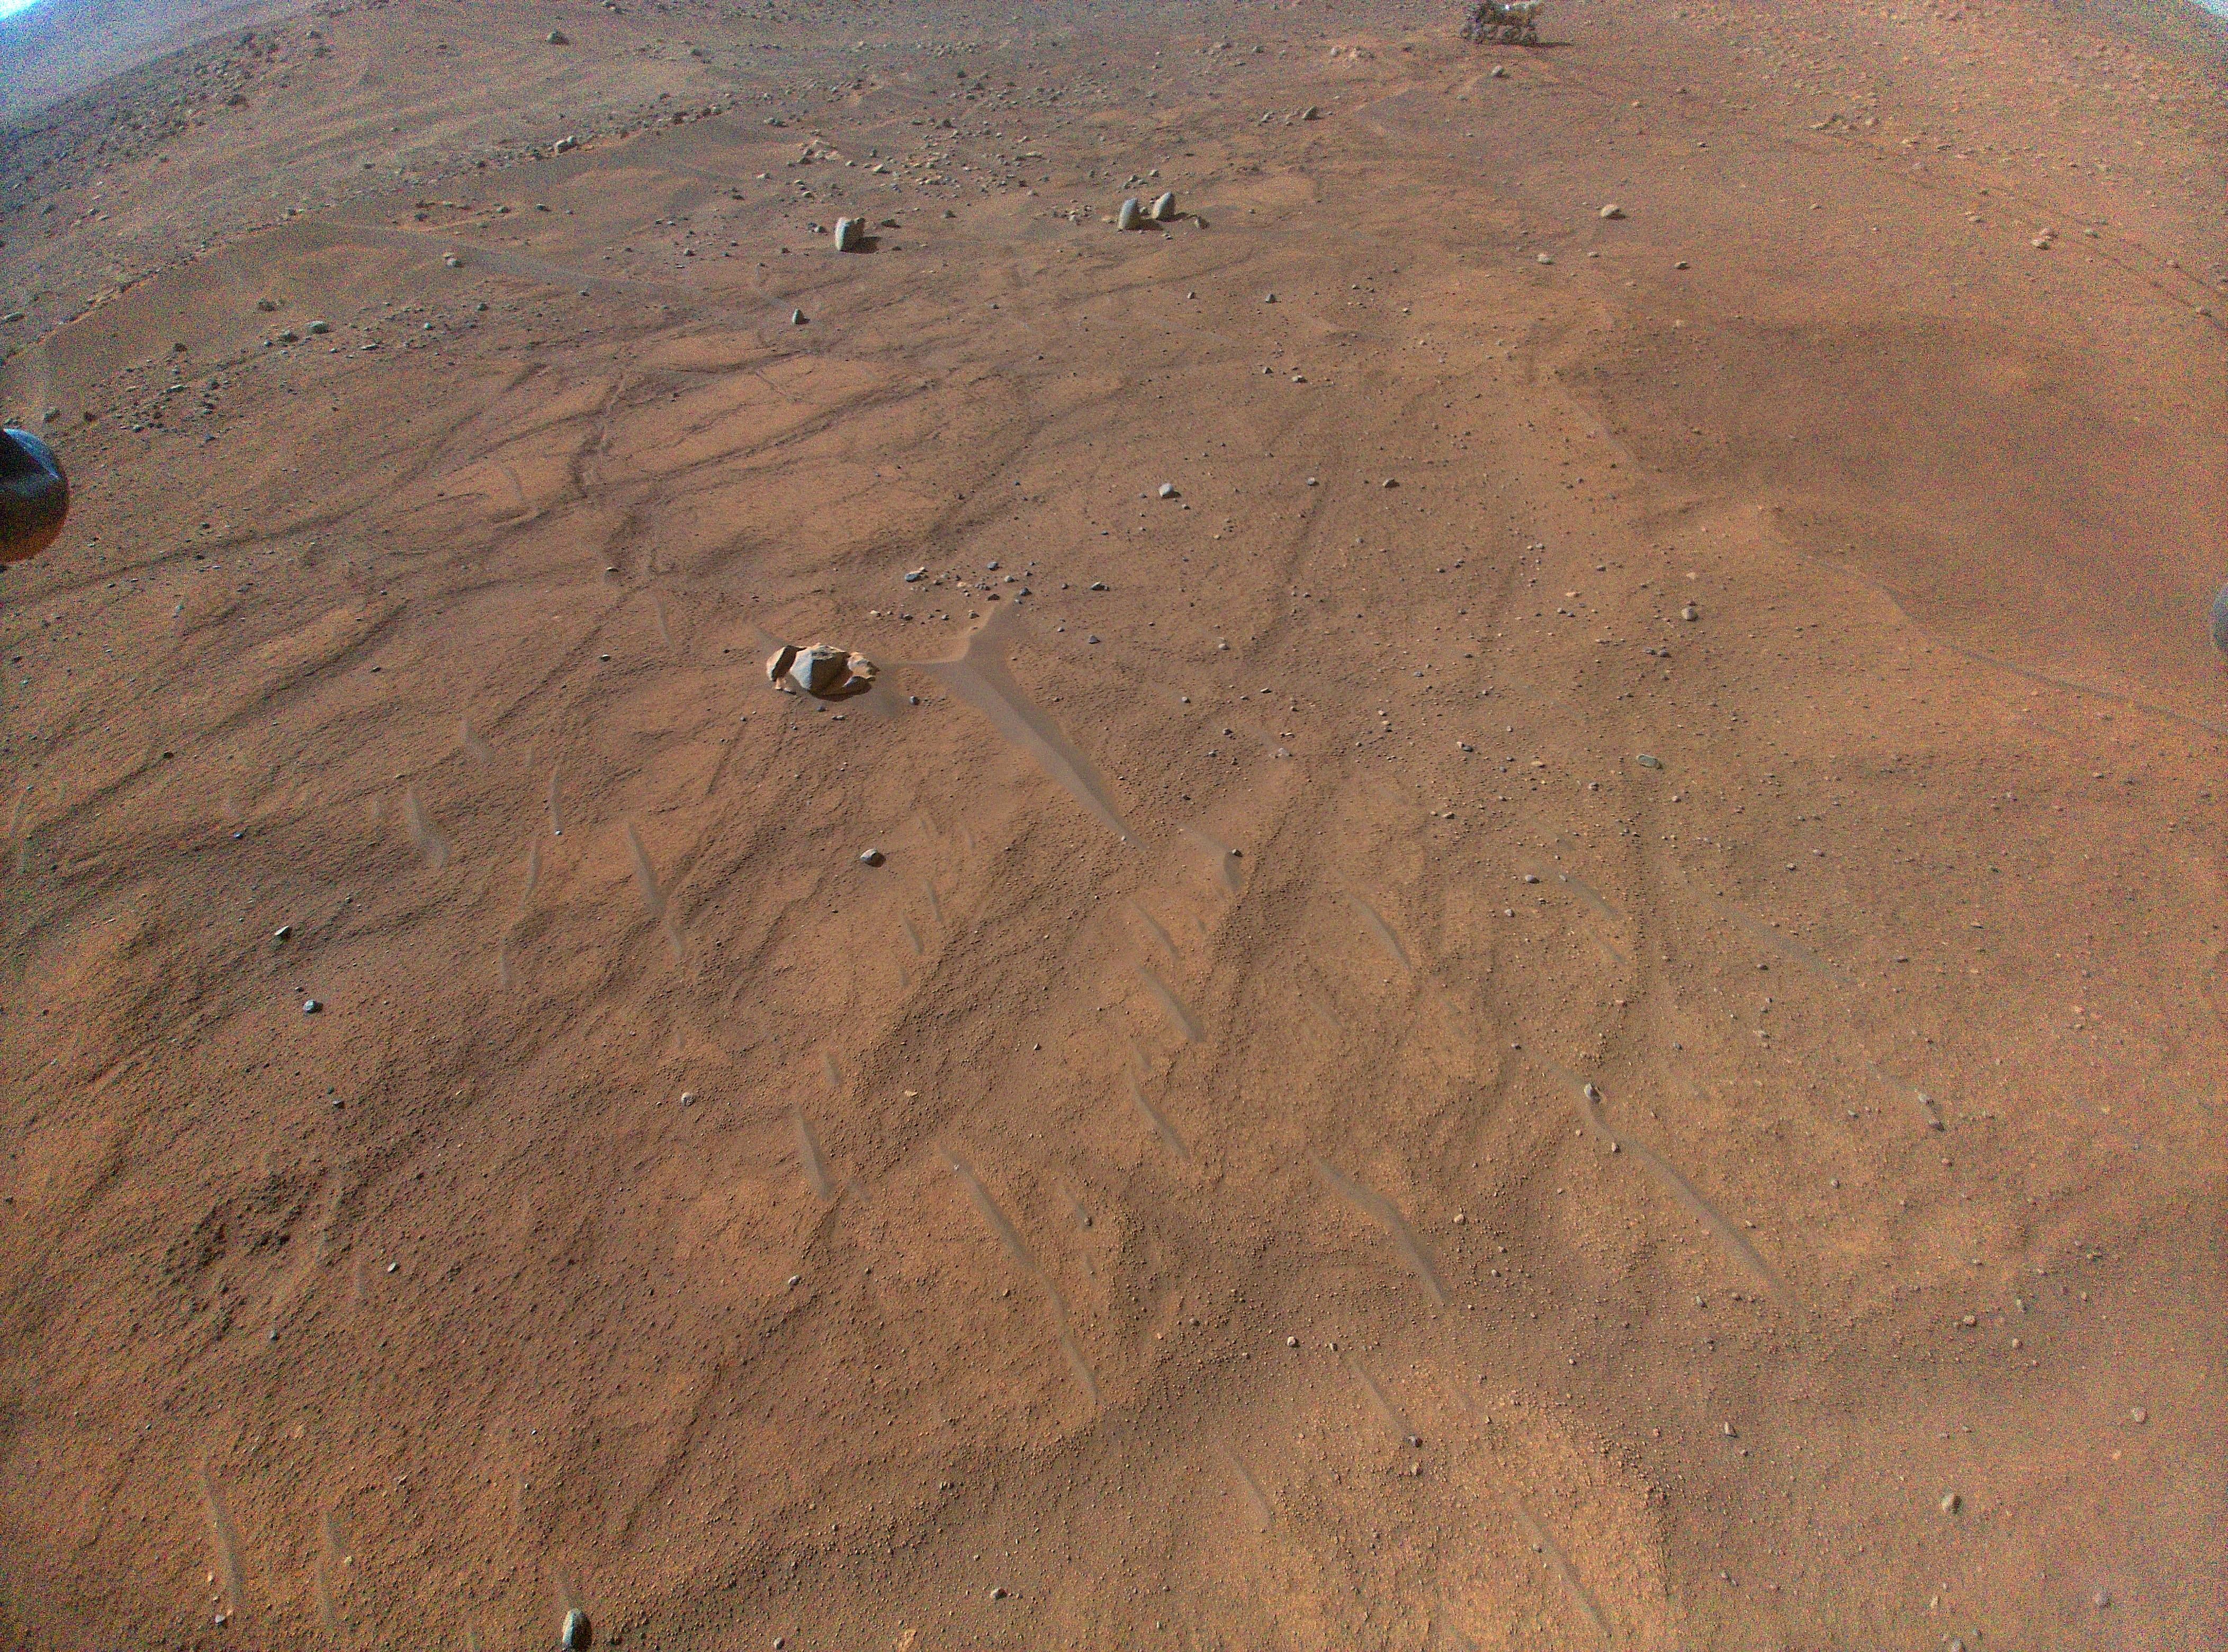 Roverul Perseverance poate fi văzut în partea de sus a acestei imagini realizată de elicopterul Ingenuity 54 în timpul celui de-al 54-lea zbor.